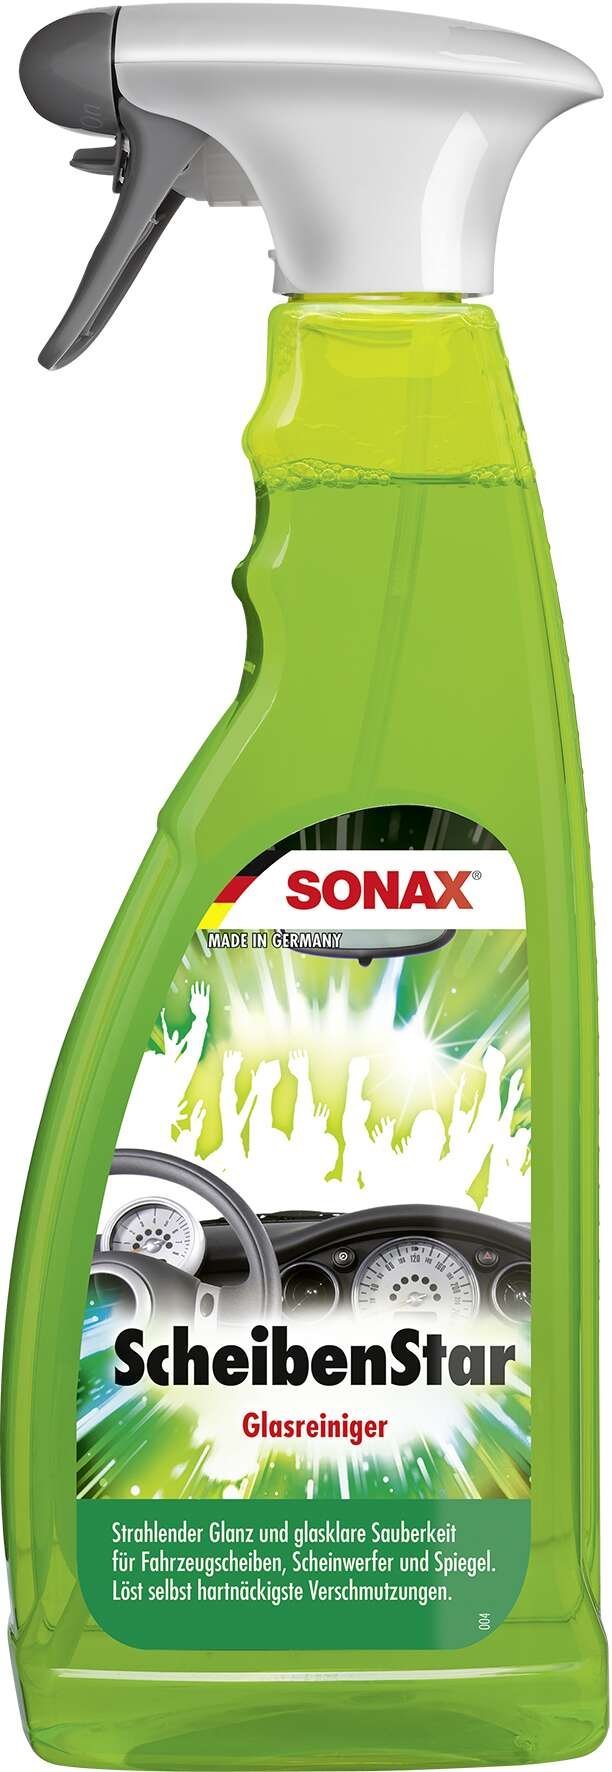 SONAX Scheiben-Star PET-Sprühflasche 750 ml Glasreiniger